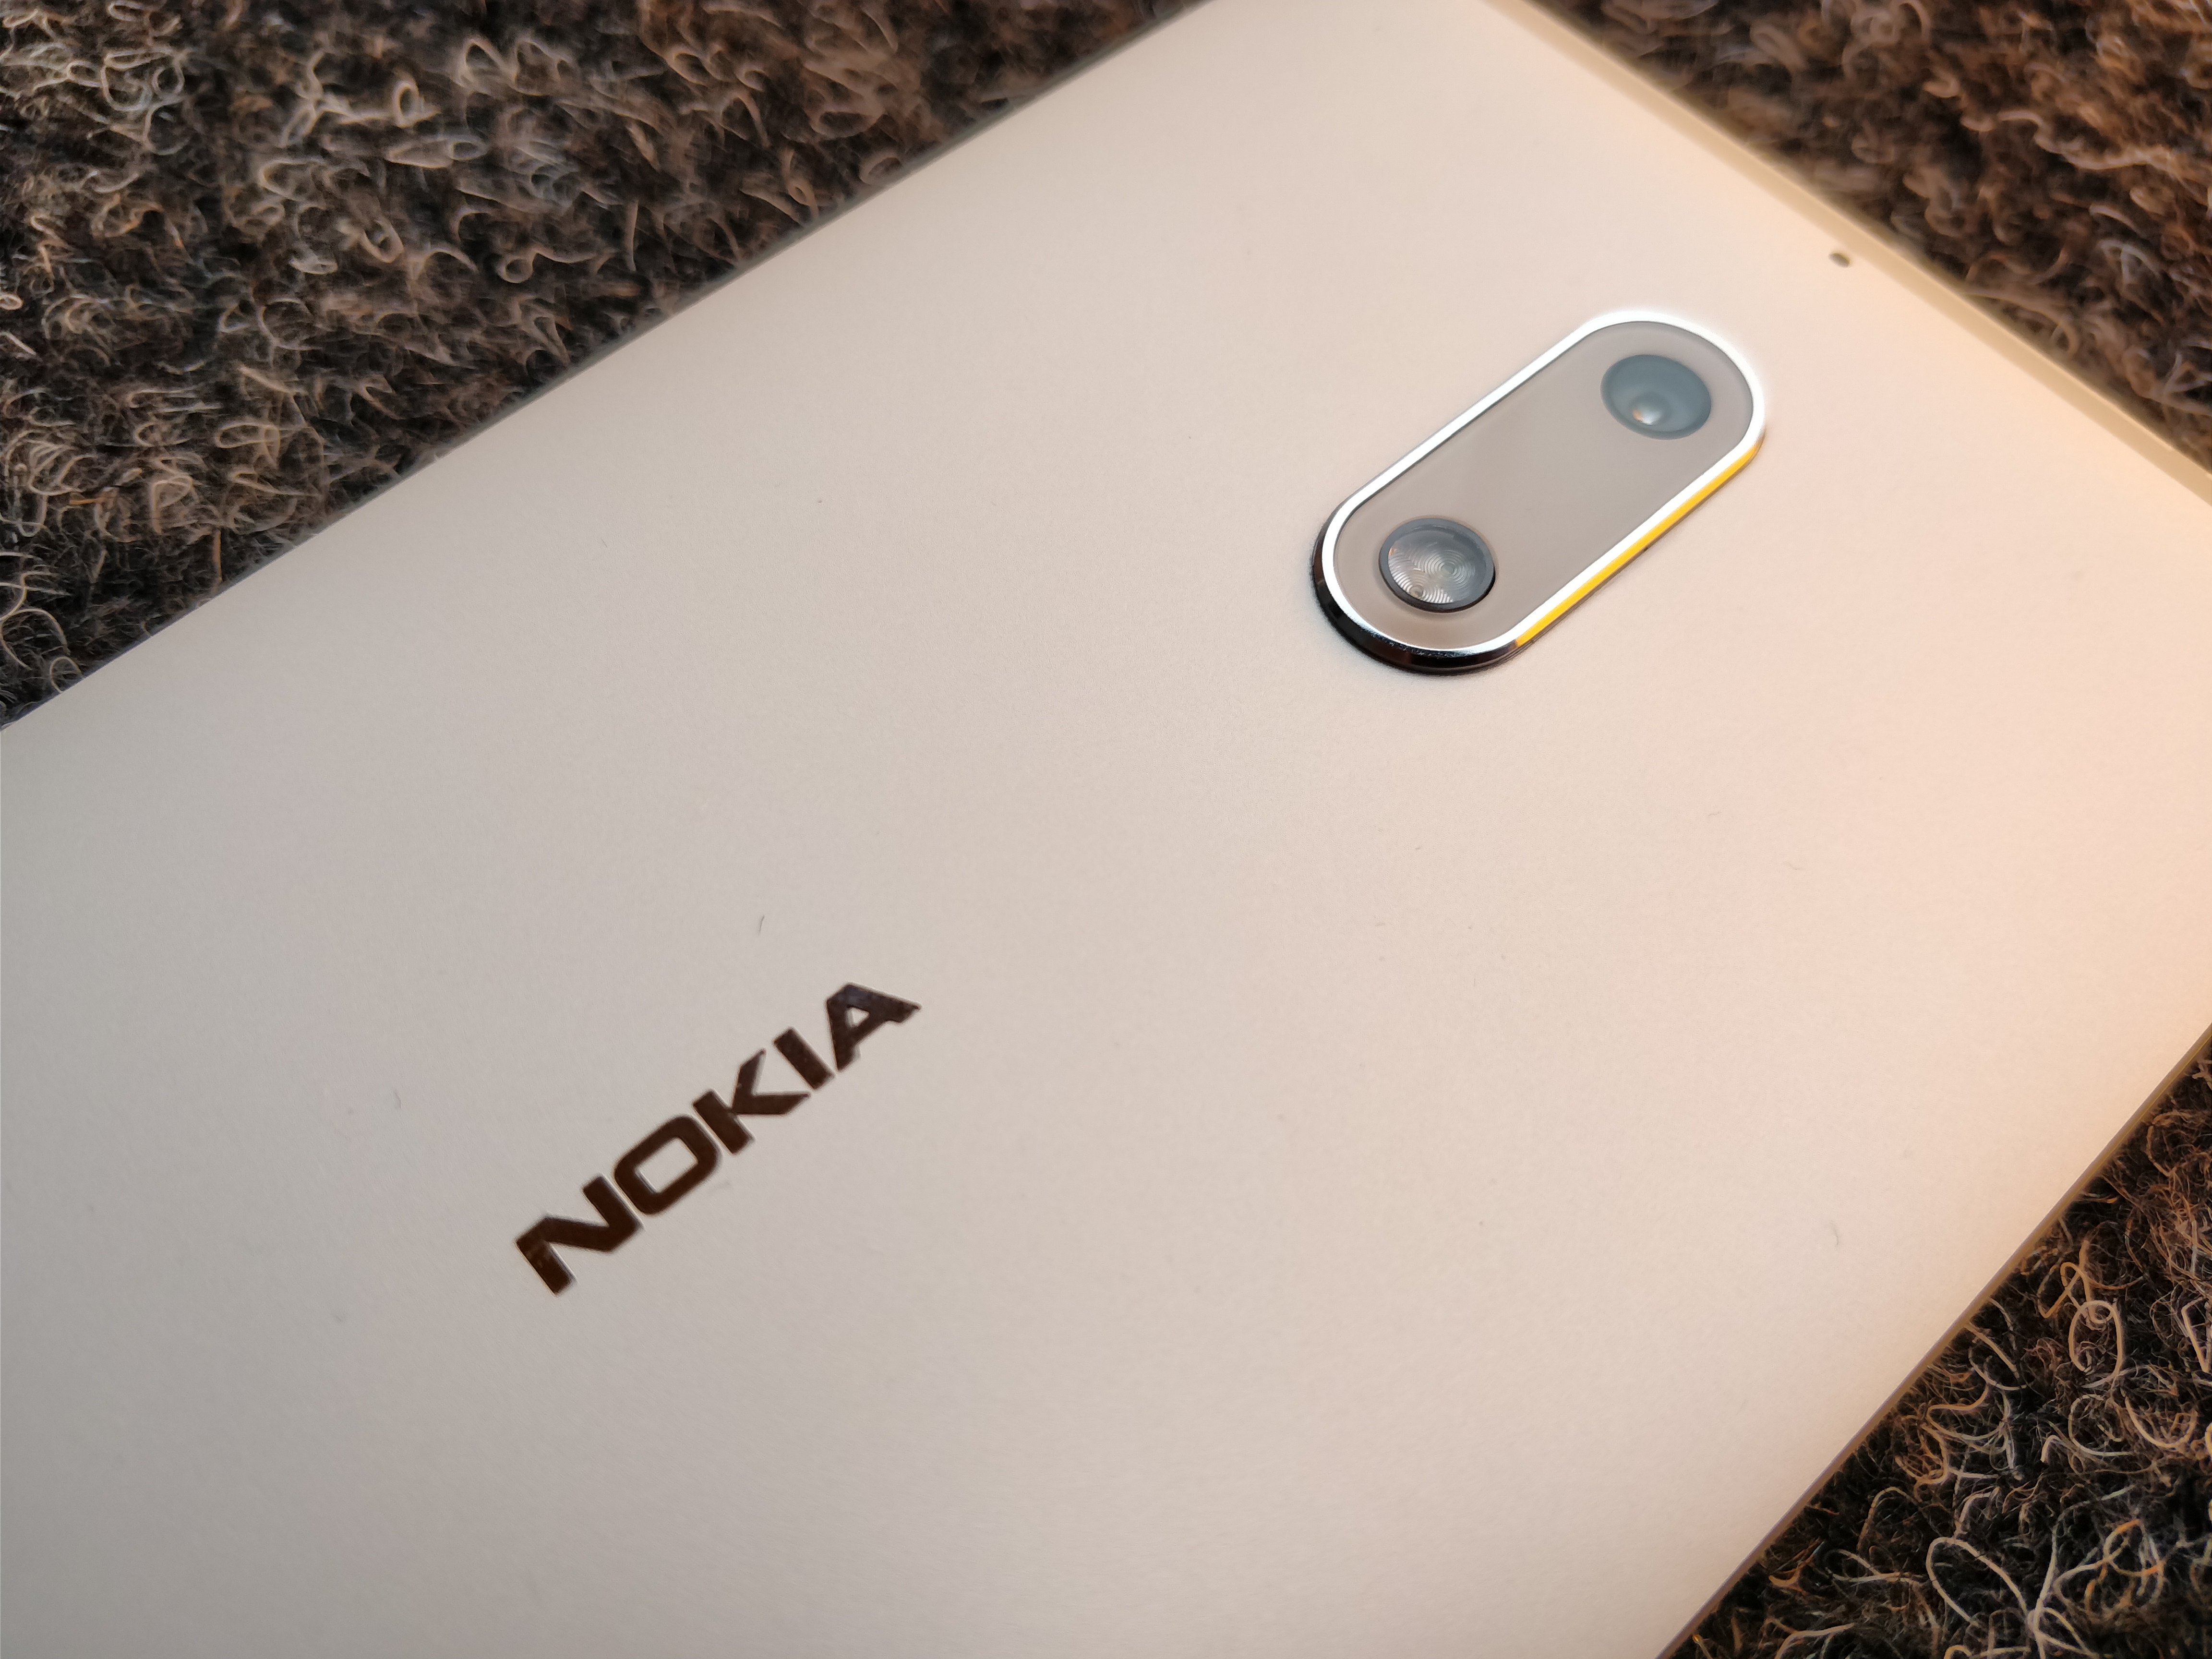 Nokia-älypuhelinten ohjelmiston rajoituksia ollaan avaamassa.